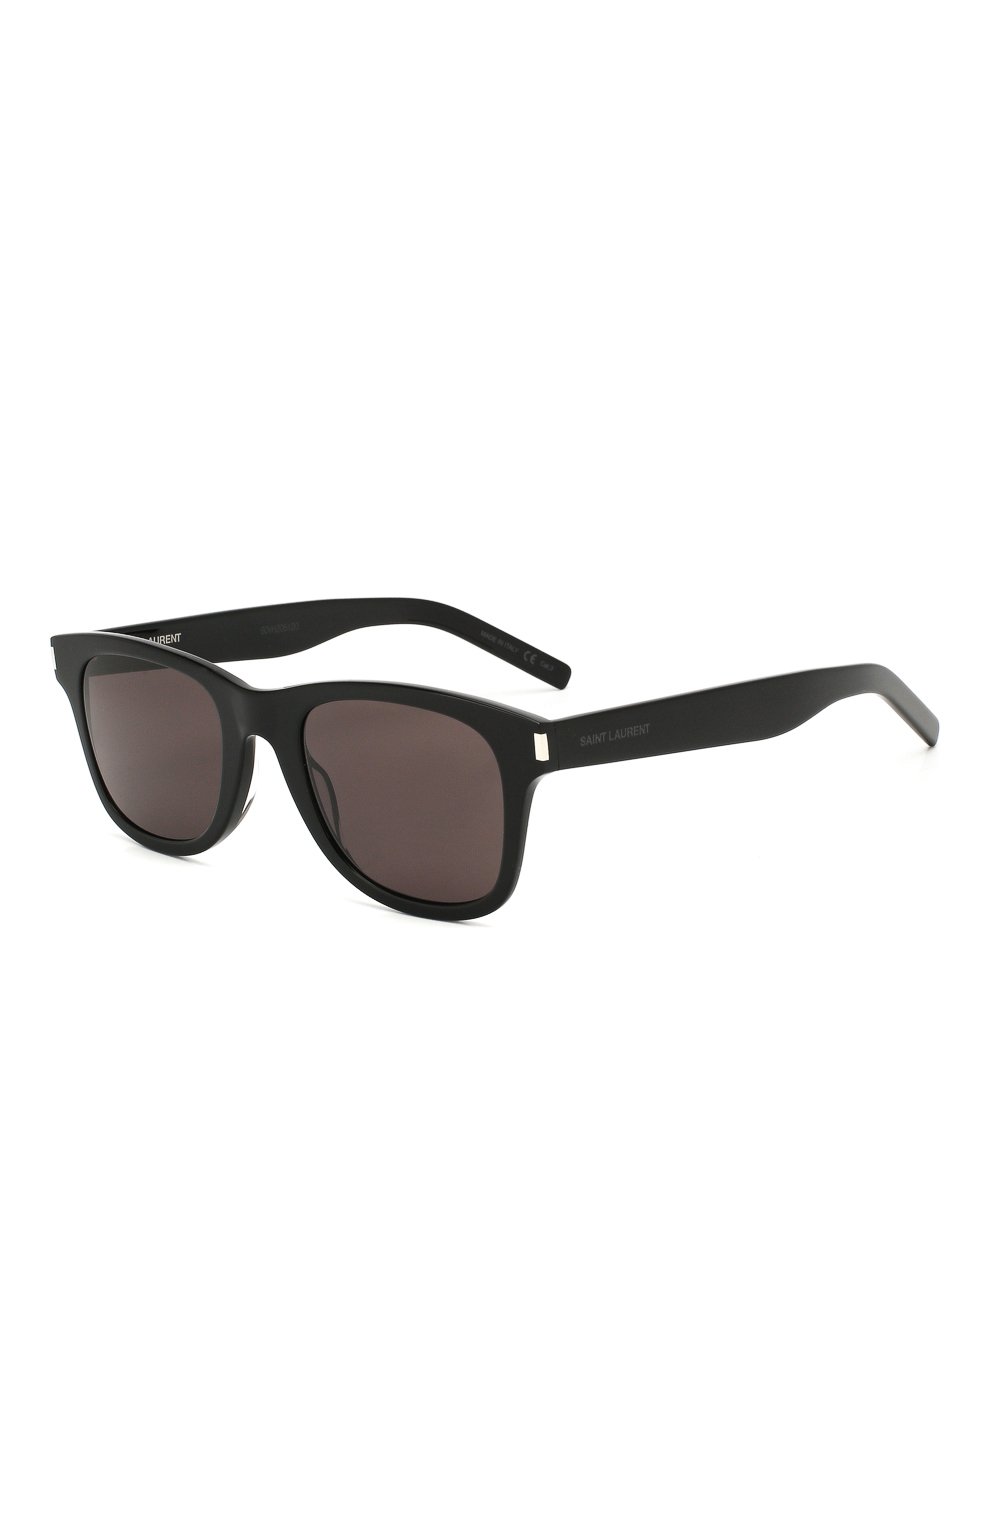 Женские коричневые солнцезащитные очки SAINT LAURENT — купить за 29300 руб. в интернет-магазине ЦУМ, арт. SL 51-B SLIM 001